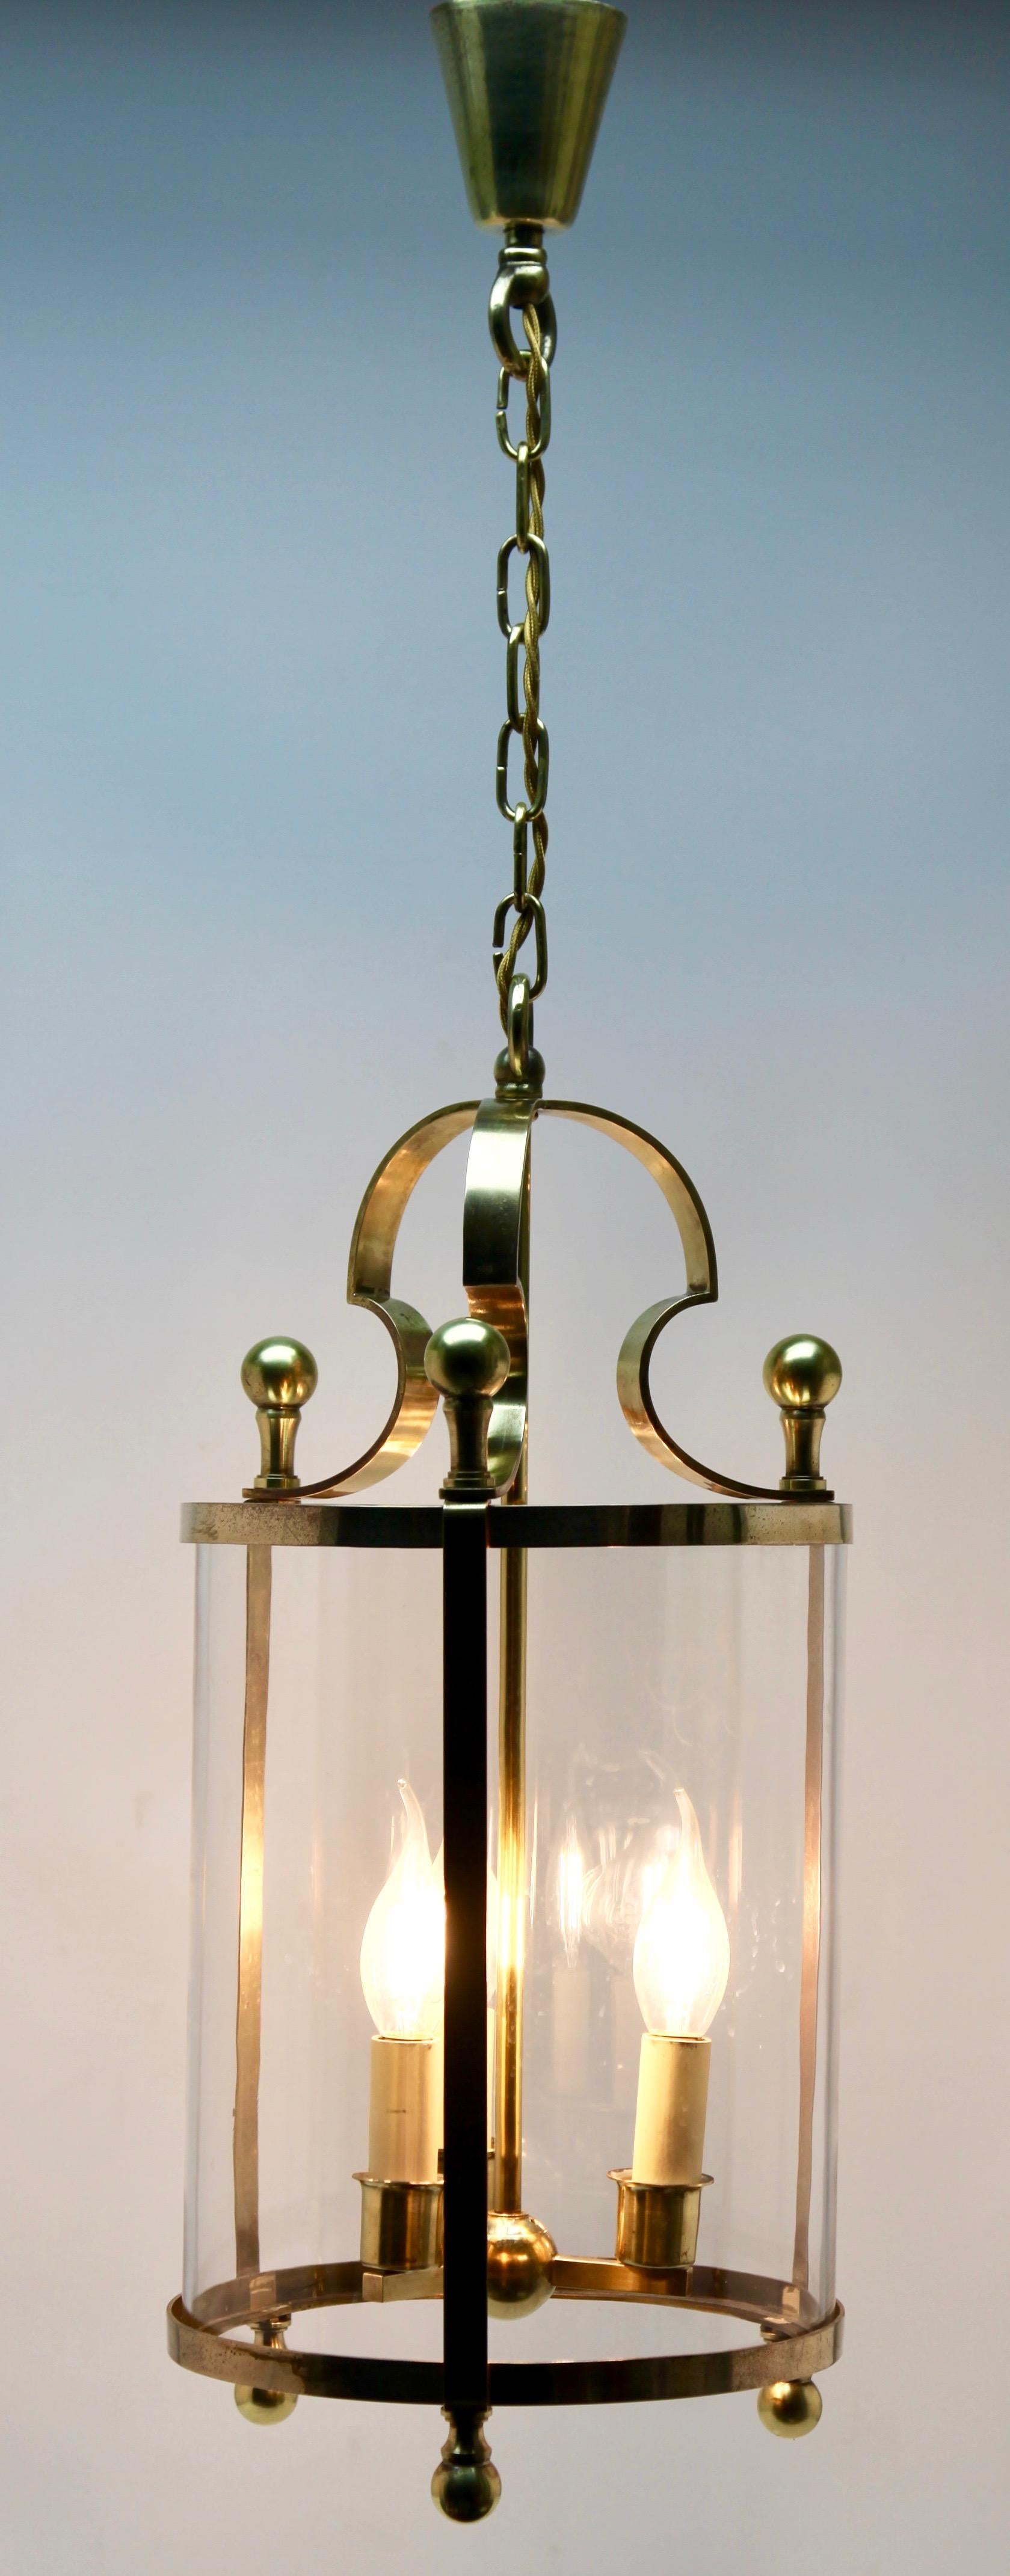 Magnifique lanterne ou lampe suspendue en laiton massif réalisée dans le style du designer italien Gaetano Sciolari, vers 1960-1970, Rome, Italie. La fabuleuse lumière vintage nécessite trois ampoules à vis standard européennes E14 pour s'illuminer.